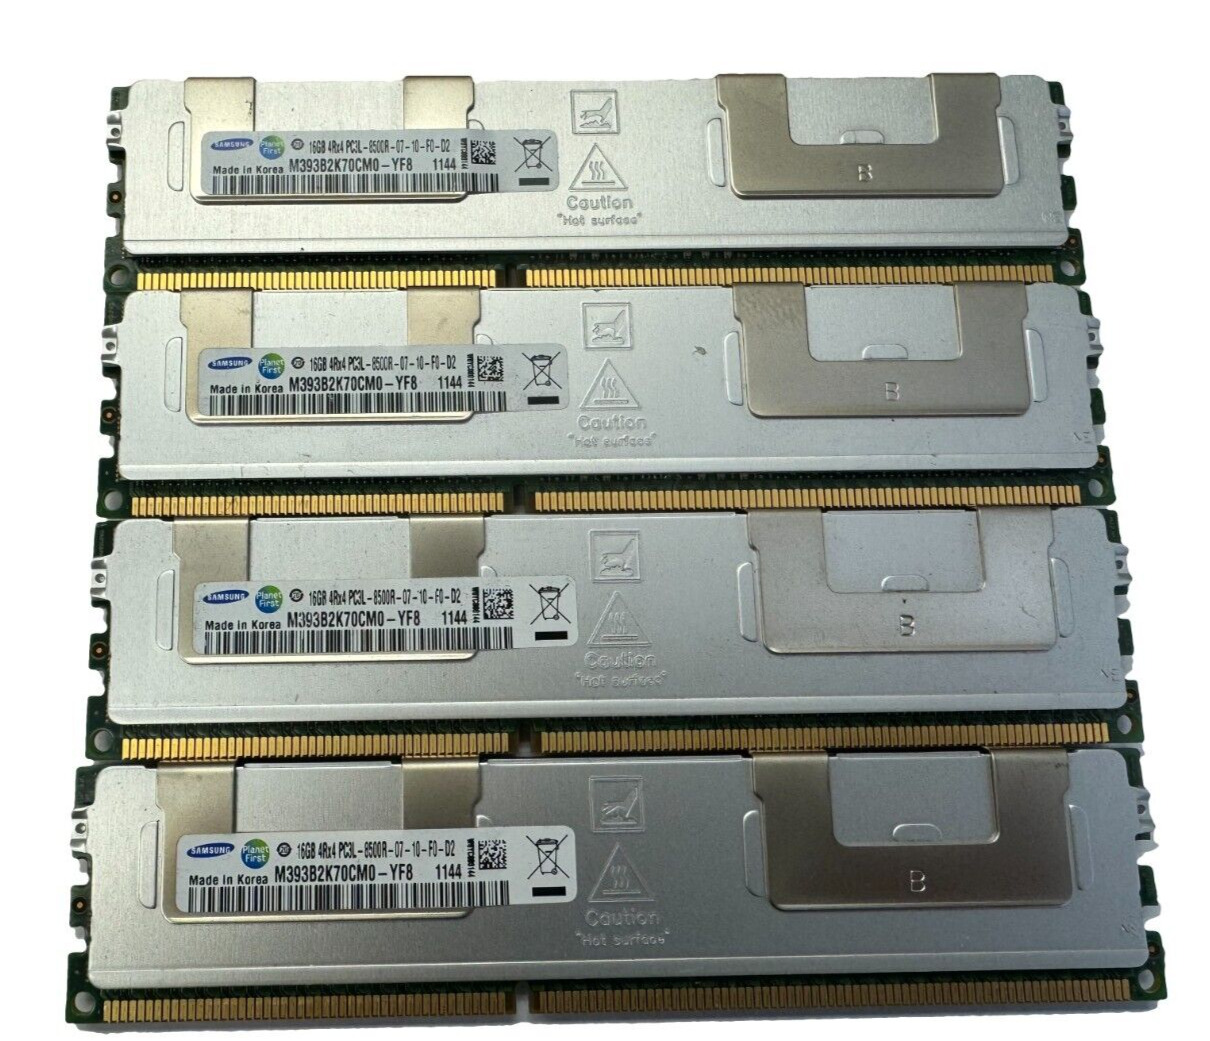 64GB (4x16GB) PC3-8500R ECC Reg Memory for Dell Precision T7600 PowerEdge T410